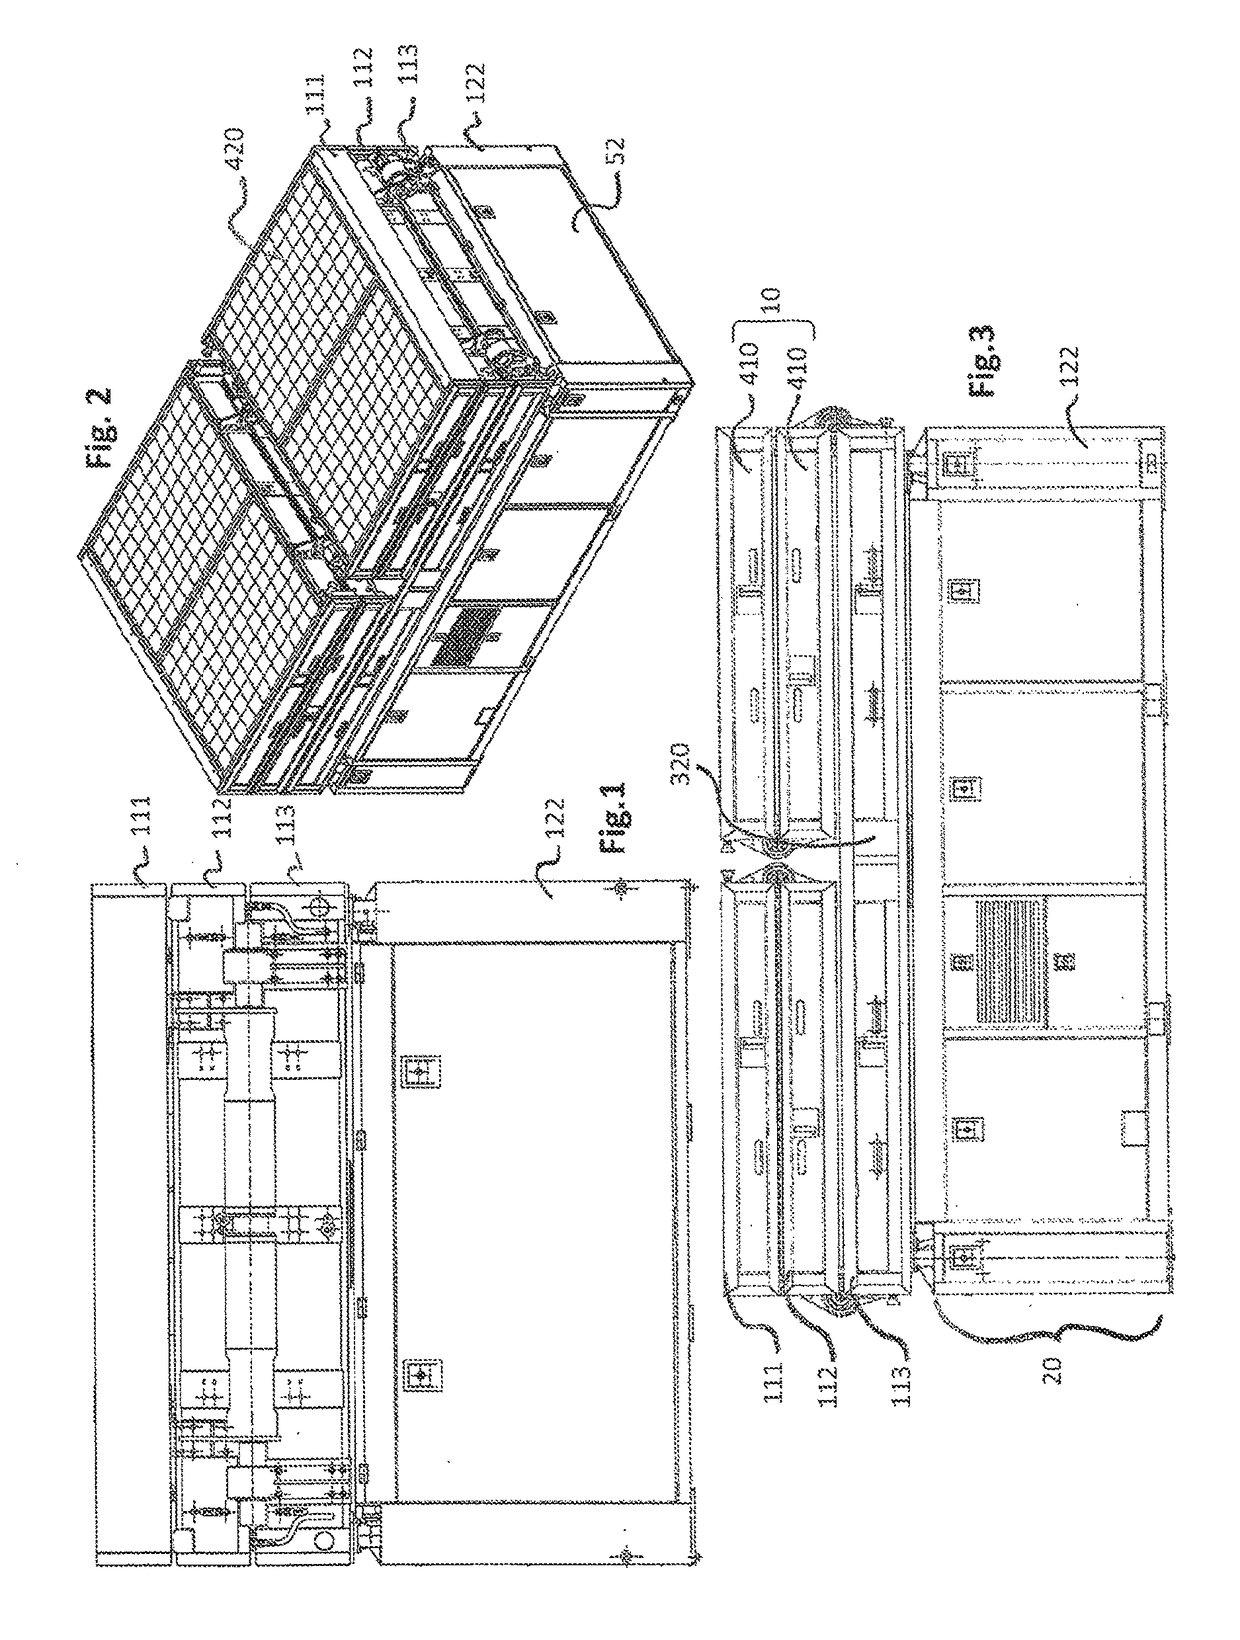 Modular solar mobile generator